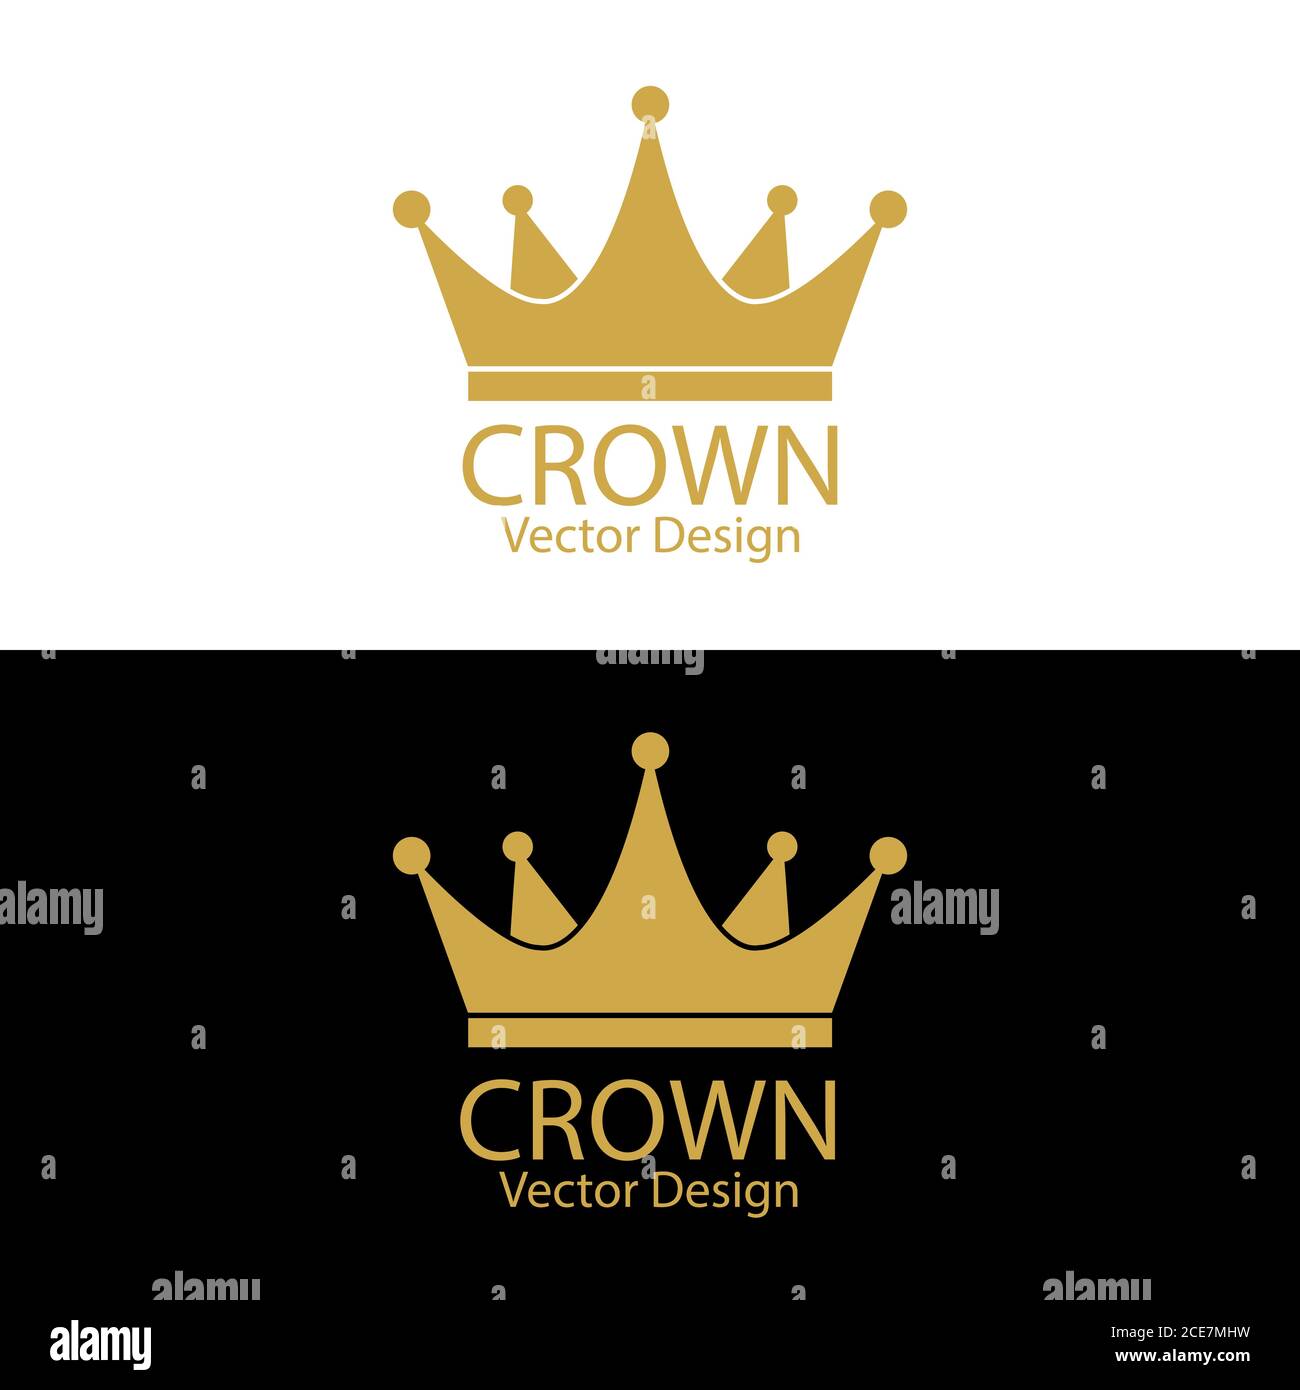 Сrown. Semplice illustrazione vettoriale per logo, adesivi, logo o design creativo isolato su sfondo bianco Illustrazione Vettoriale